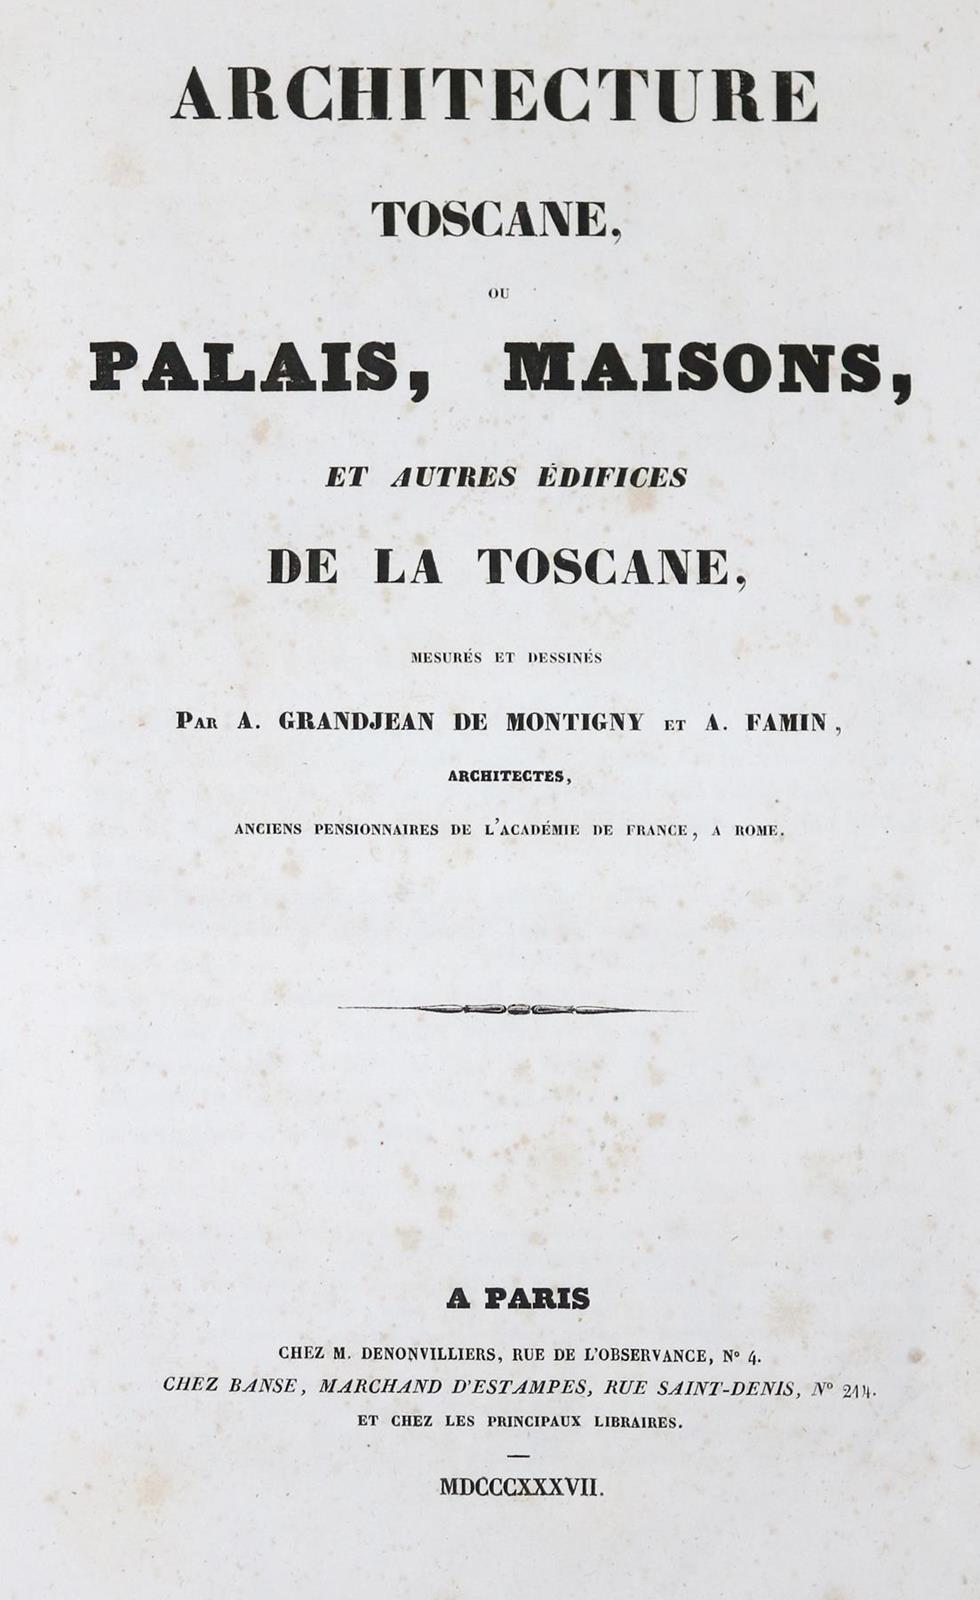 Grandjean de Montigny,A. u. A.Famin. | Bild Nr.2